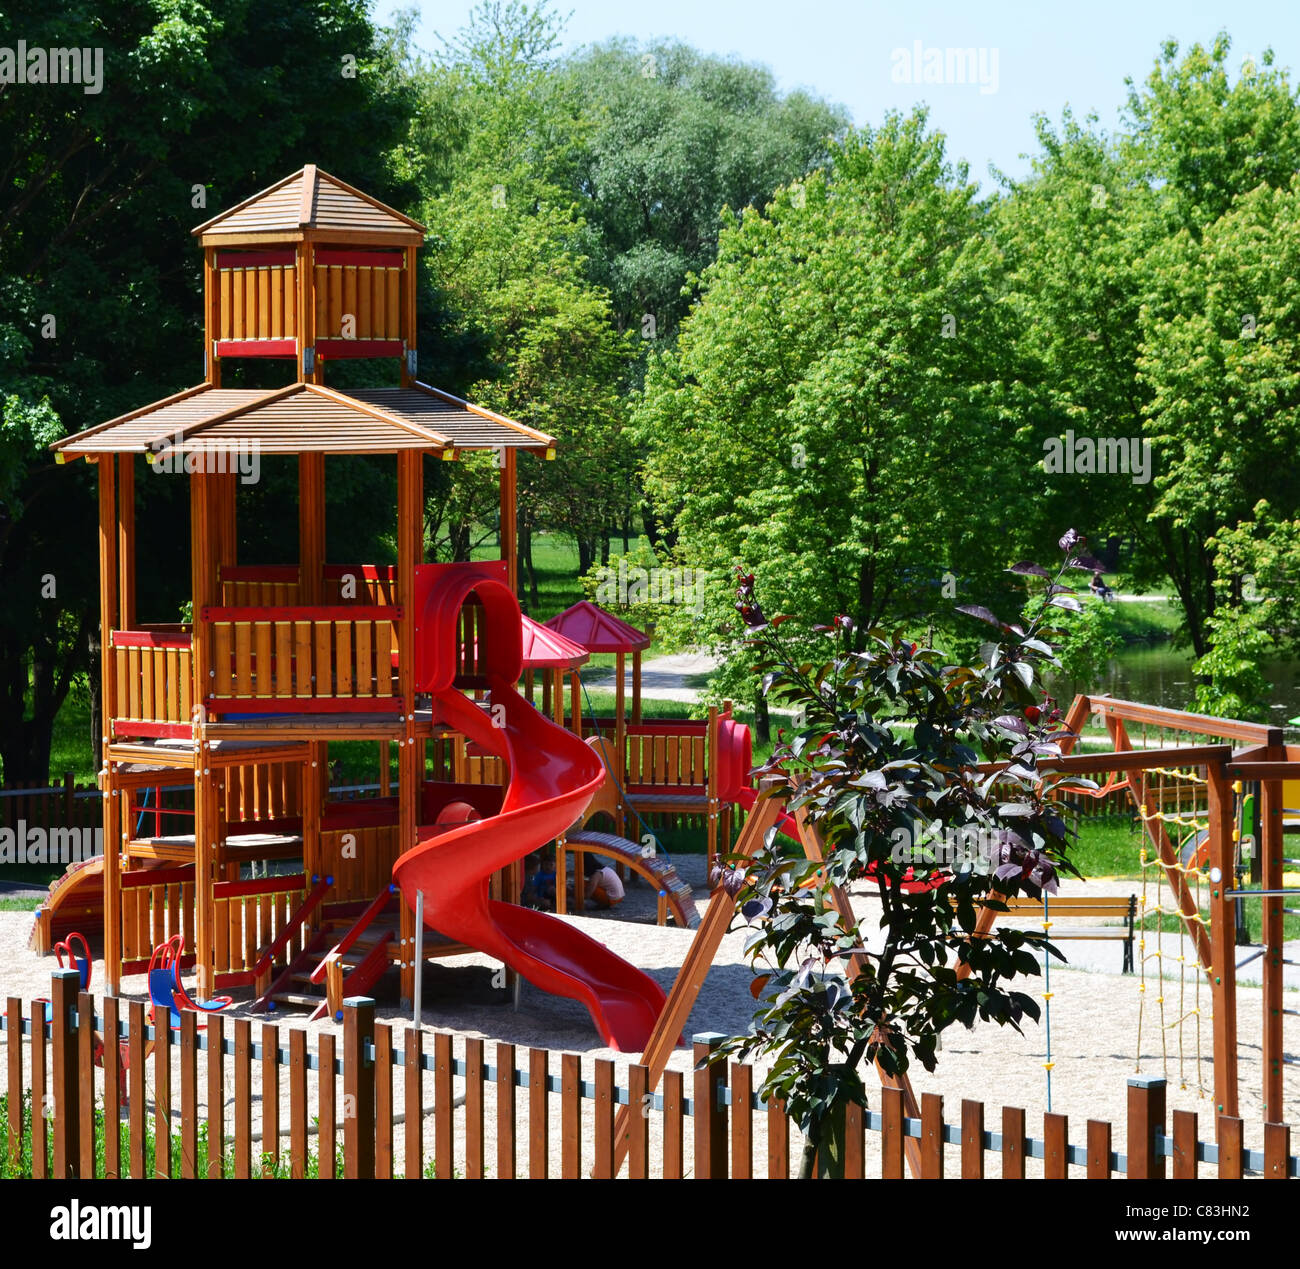 Château en bois avec toboggan sur une aire de jeux moderne, situé dans un parc de loisirs - un parc naturel, un environnement sain pour les enfants. Banque D'Images